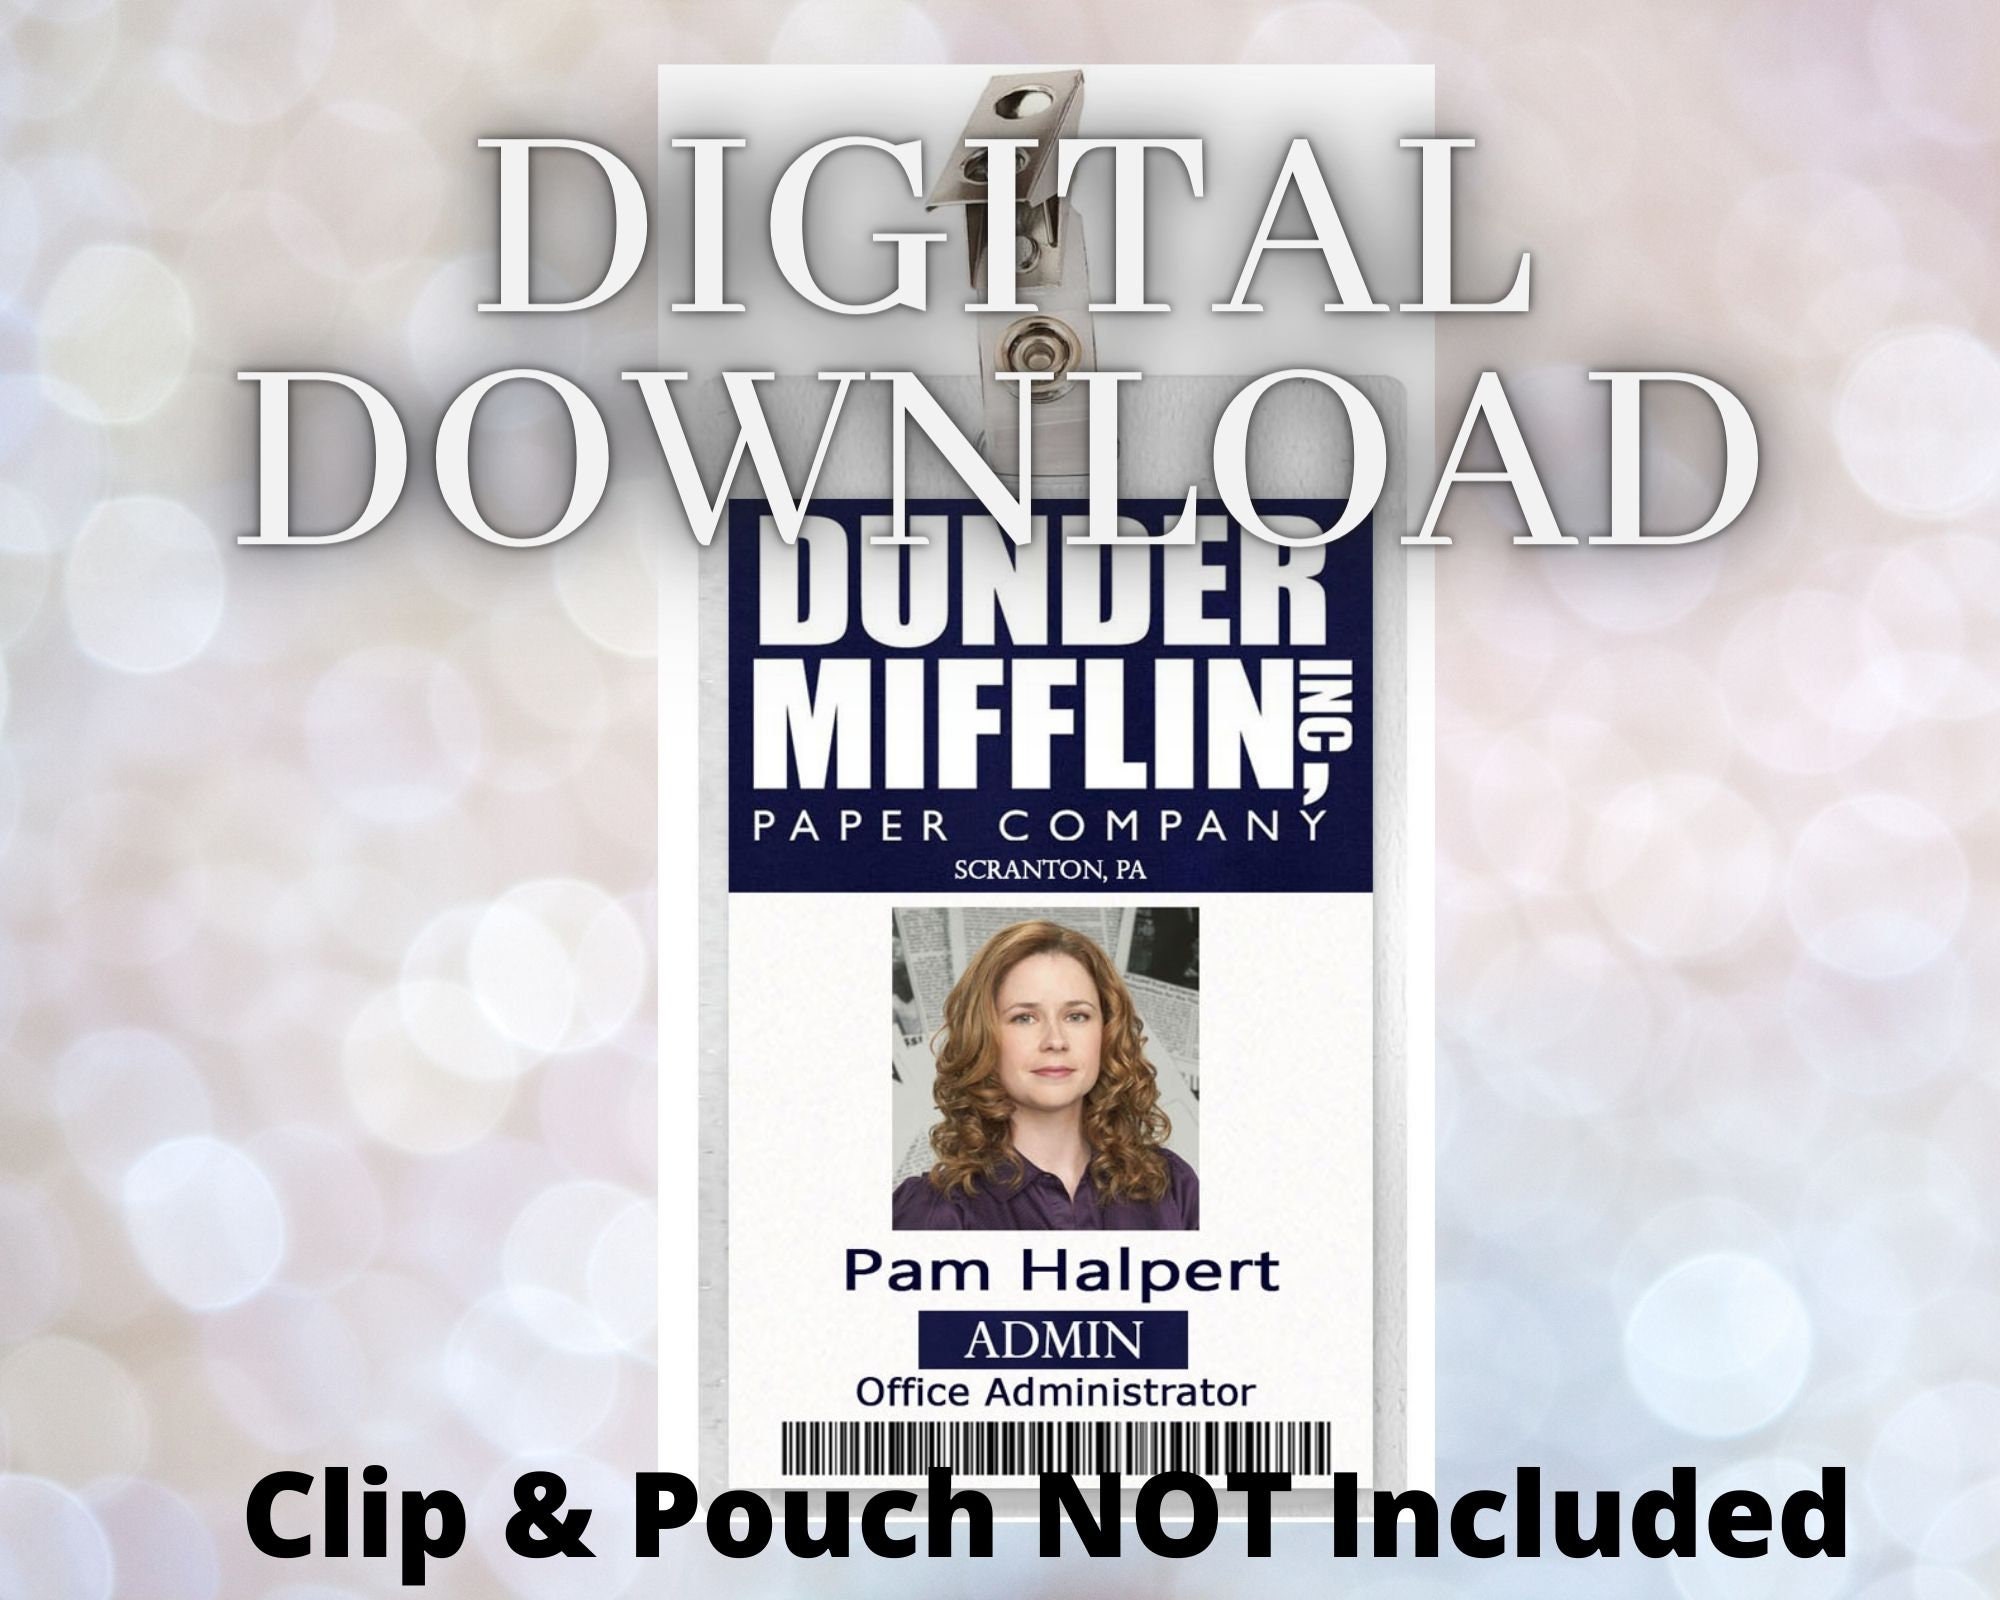 The Office Inspired - Dunder Mifflin Employee ID Badge - Pam Halpert - Epic  IDs